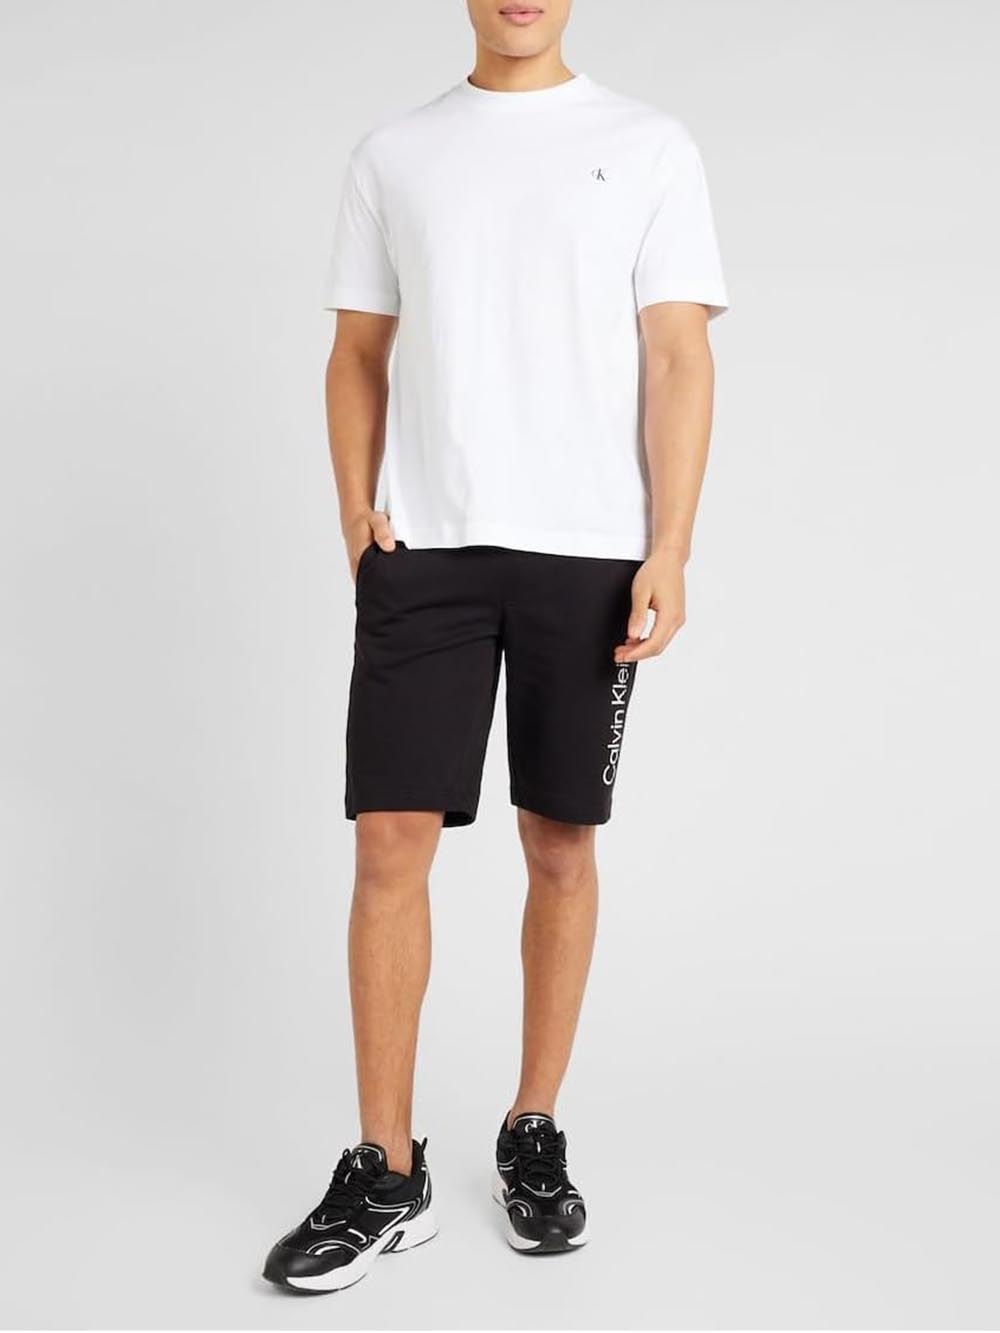 Calvin Klein T-shirt Uomo J30j325699 Bianco